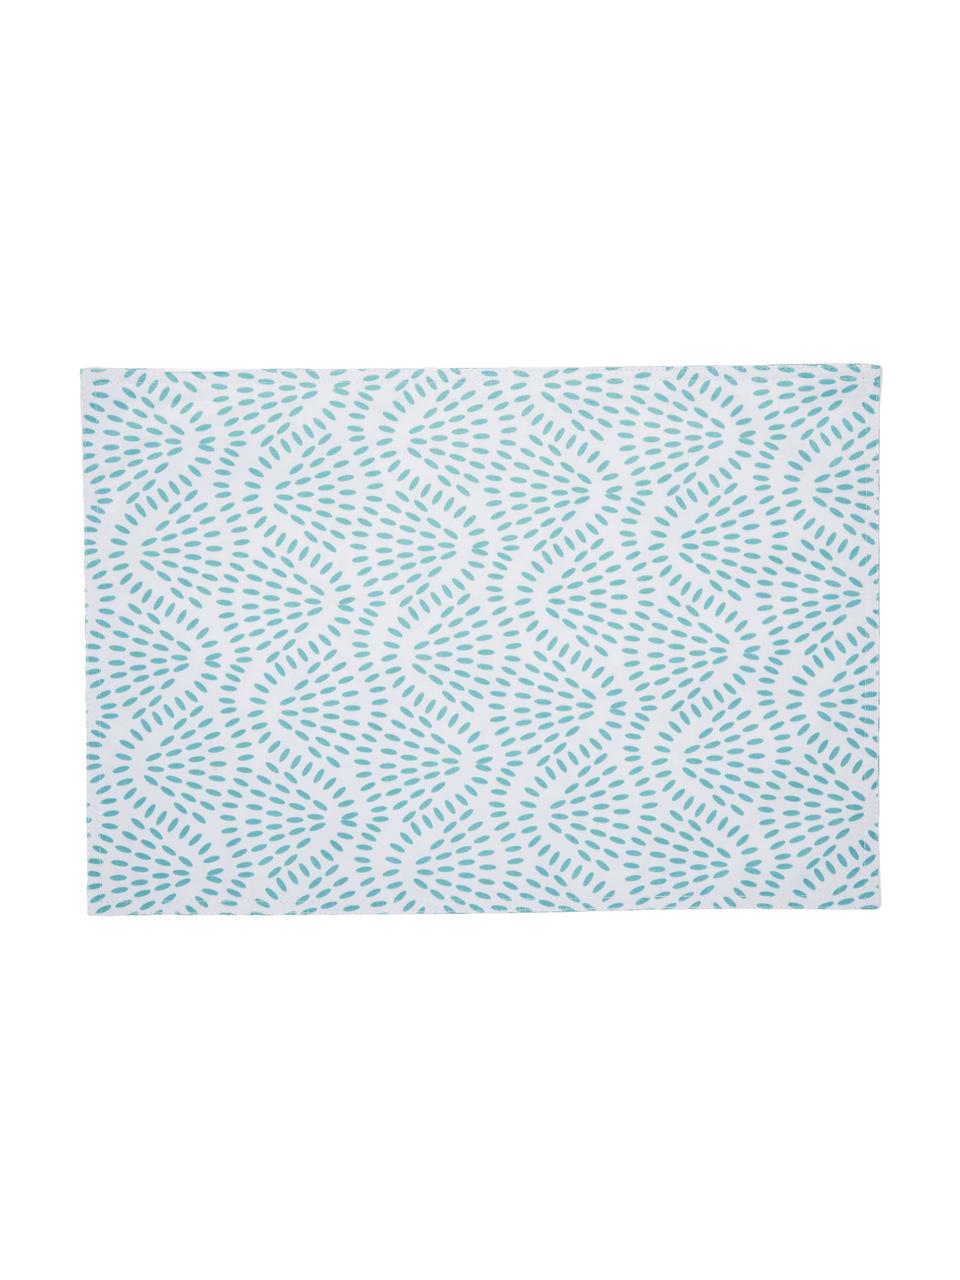 Wasserabweisende Kunststoff-Tischsets Starbone, 2 Stück, Polyester, Weiß, Blau, 33 x 48 cm